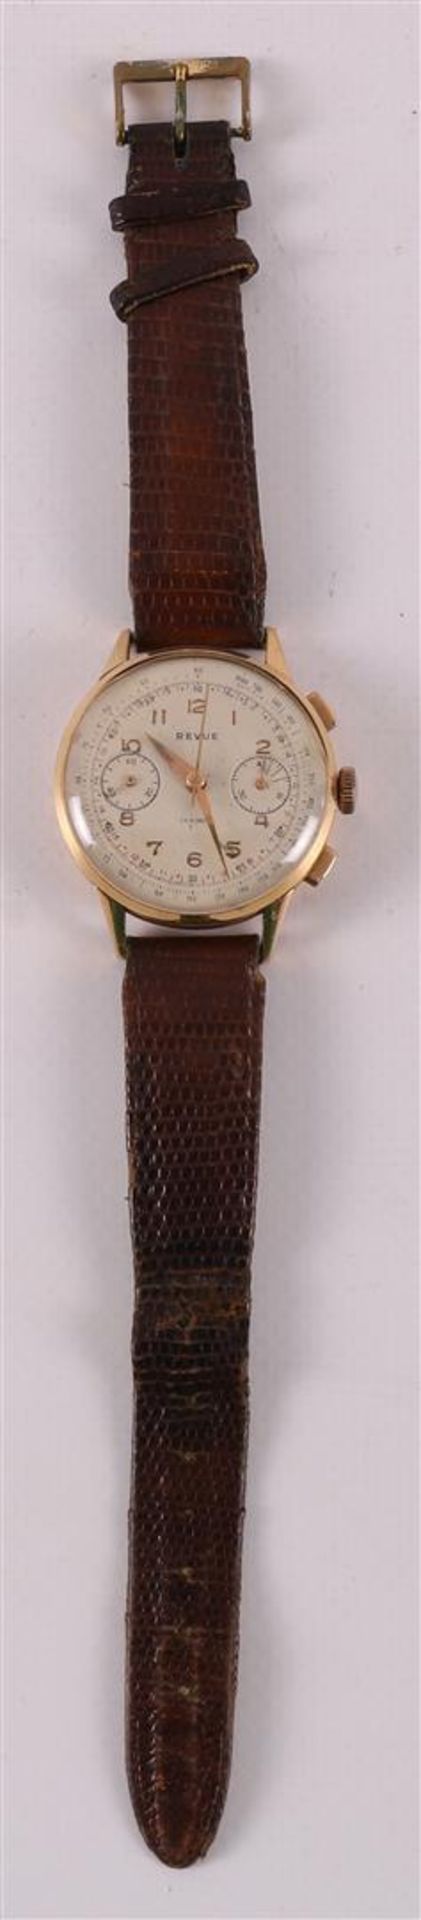 A vintage Revue 17 Rubis Incabloc men's wristwatch in 18 kt gold case.